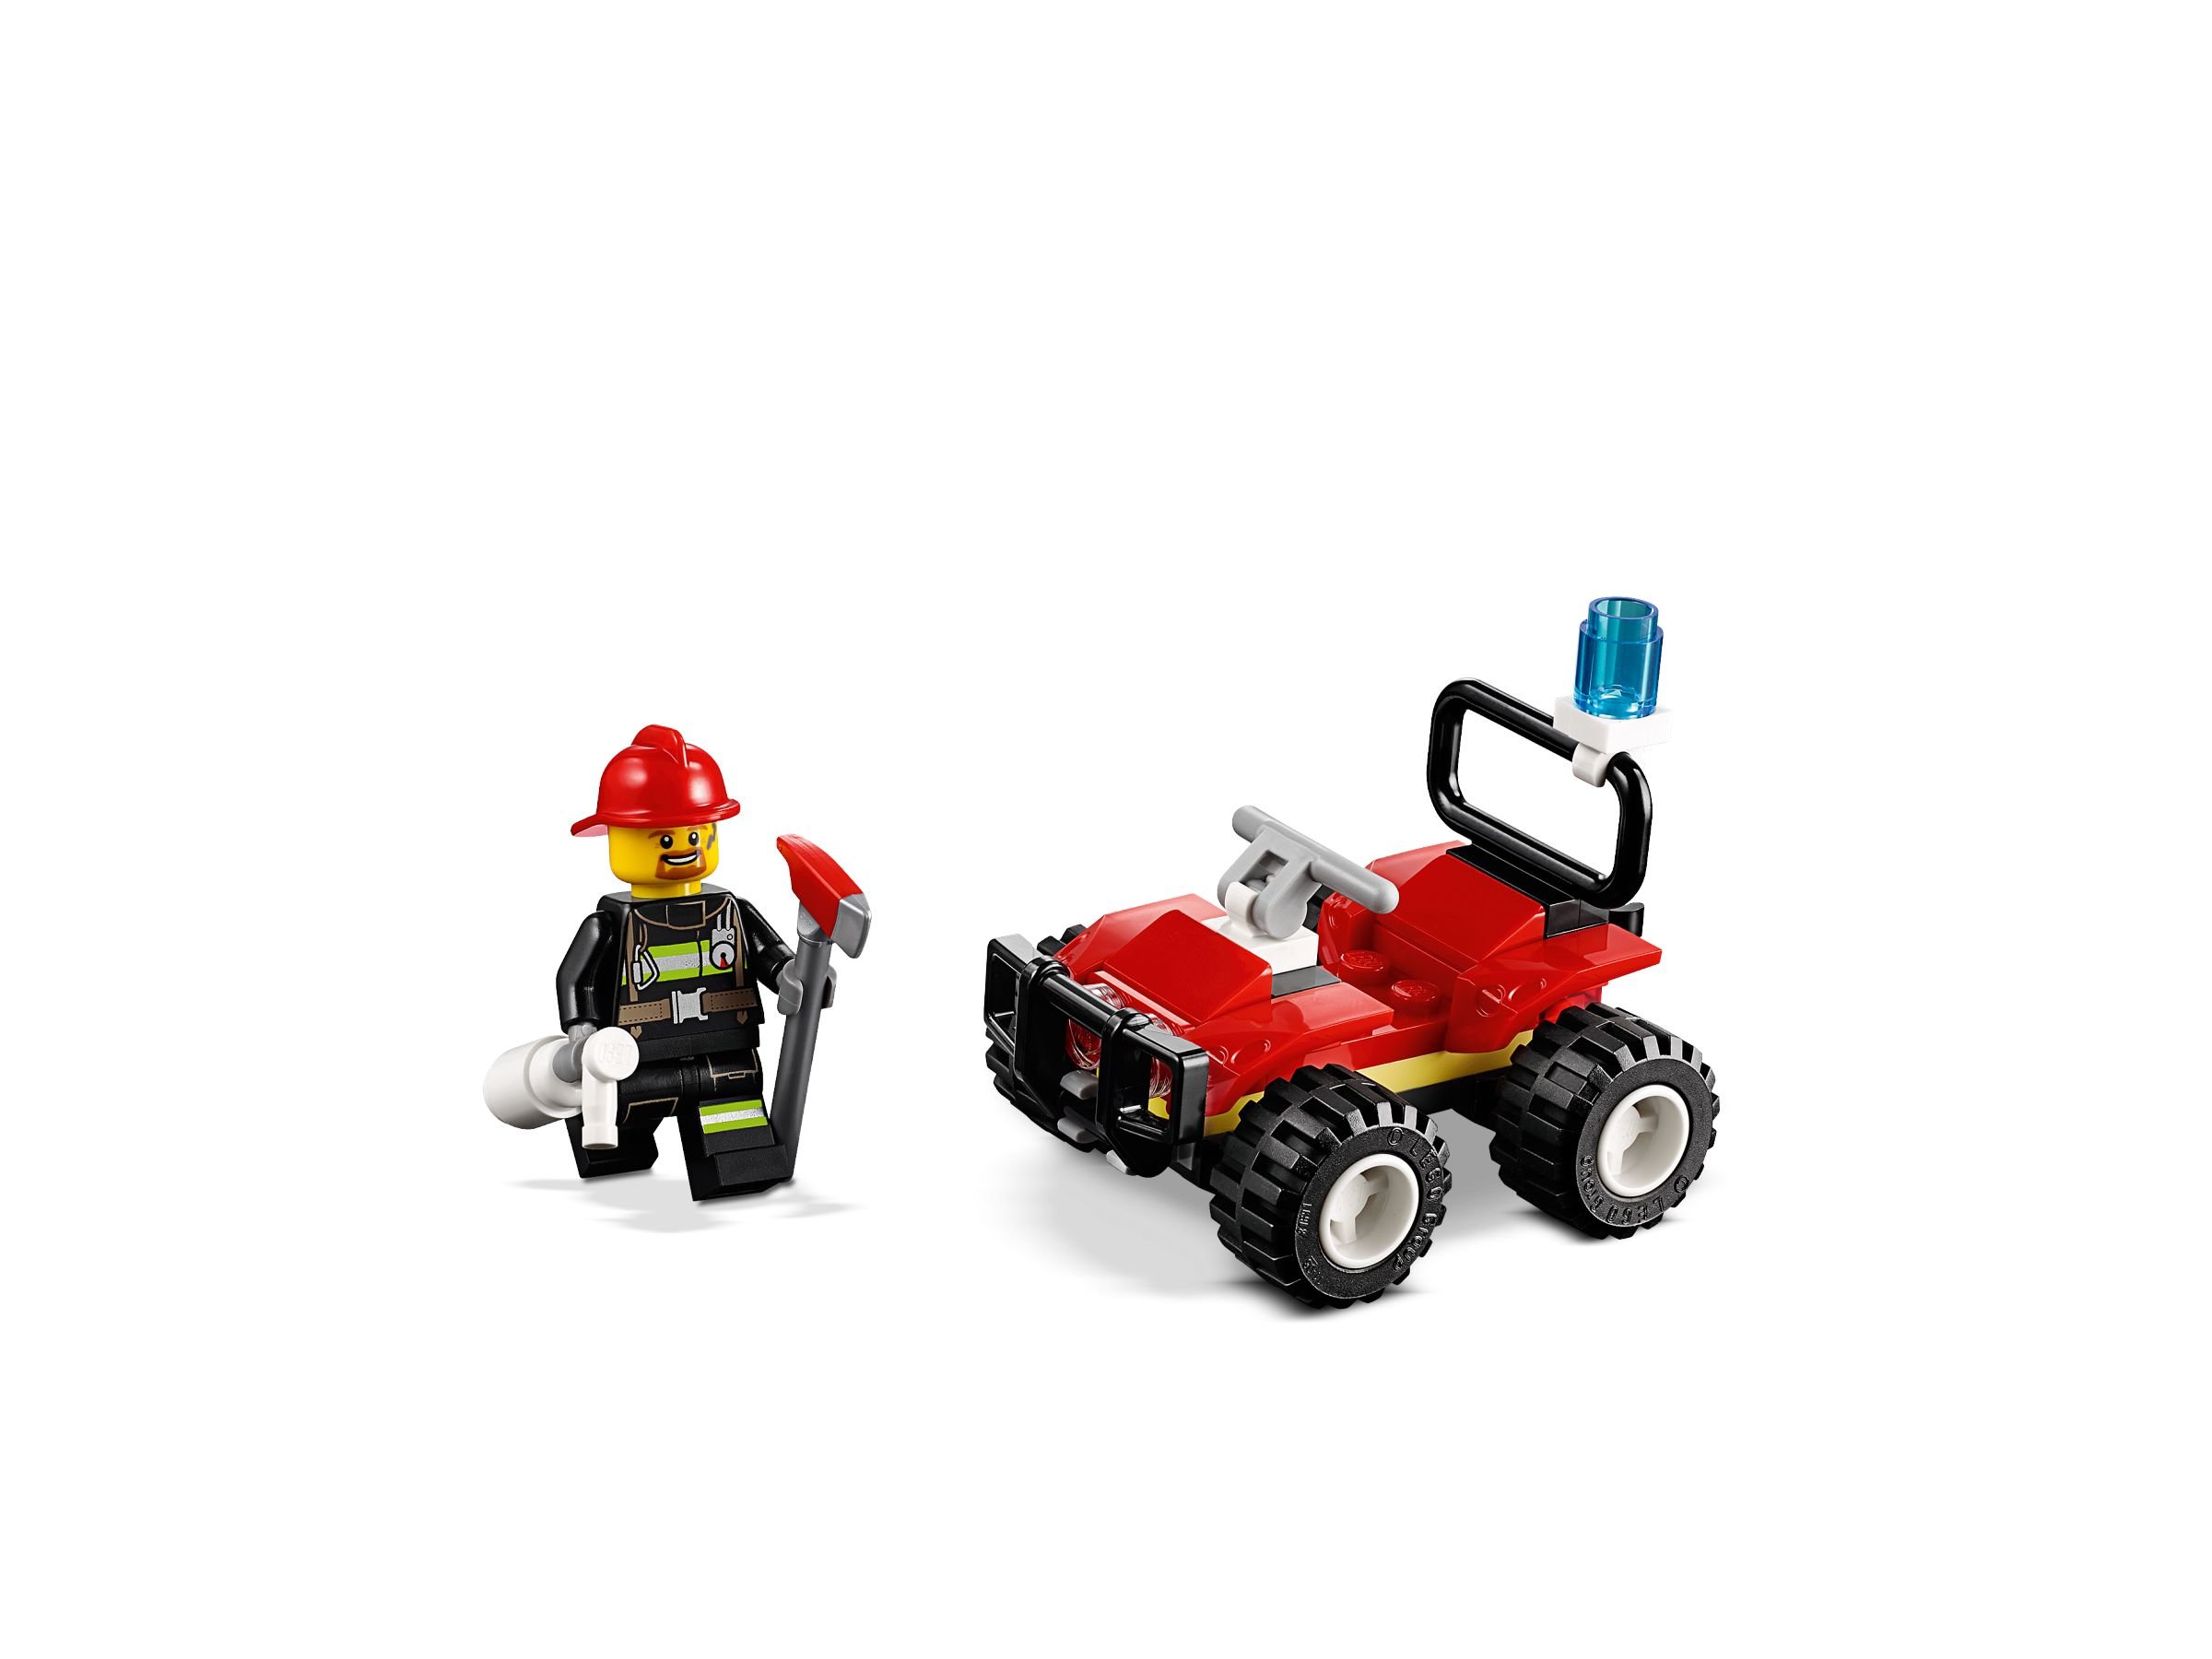 LEGO City 30361 Feuerwehr Quad Polybag LEGO_30361_alt2.jpg